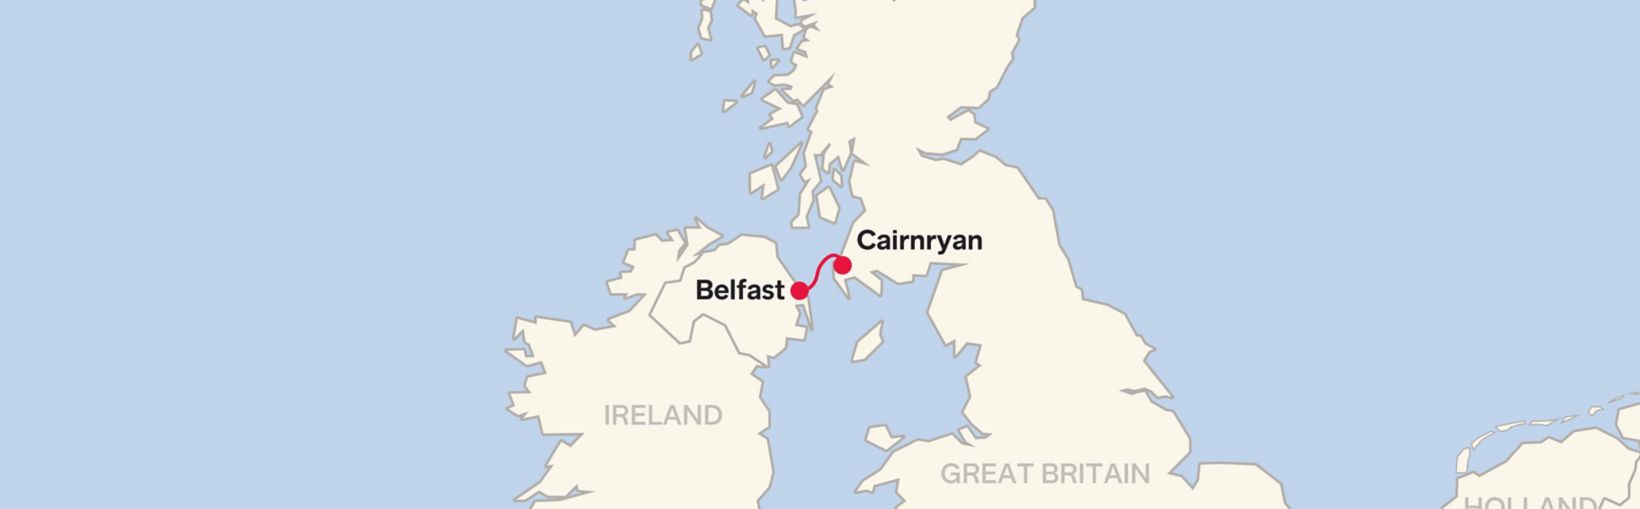 Mappa delle rotte della linea Stena Belfast Cairnryan